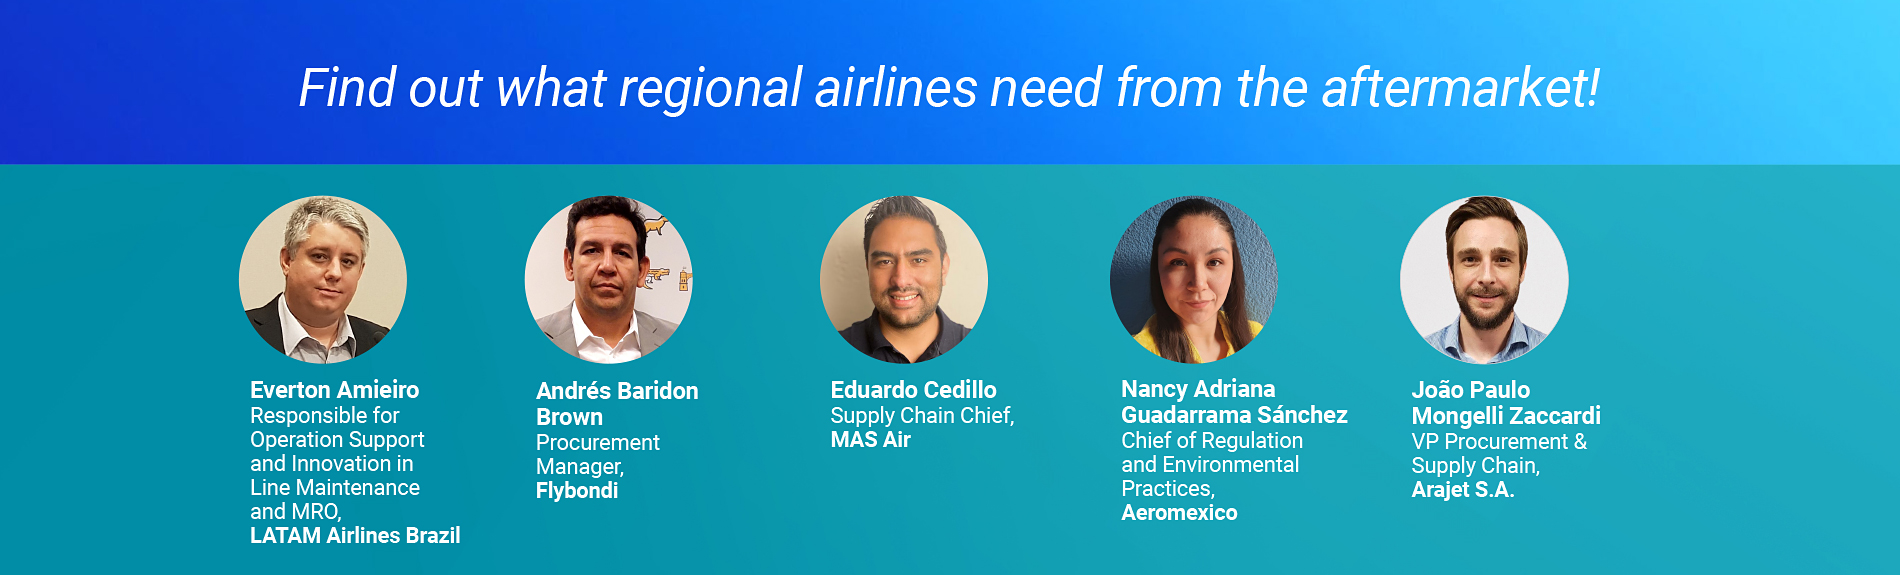 Regional Airline leaders